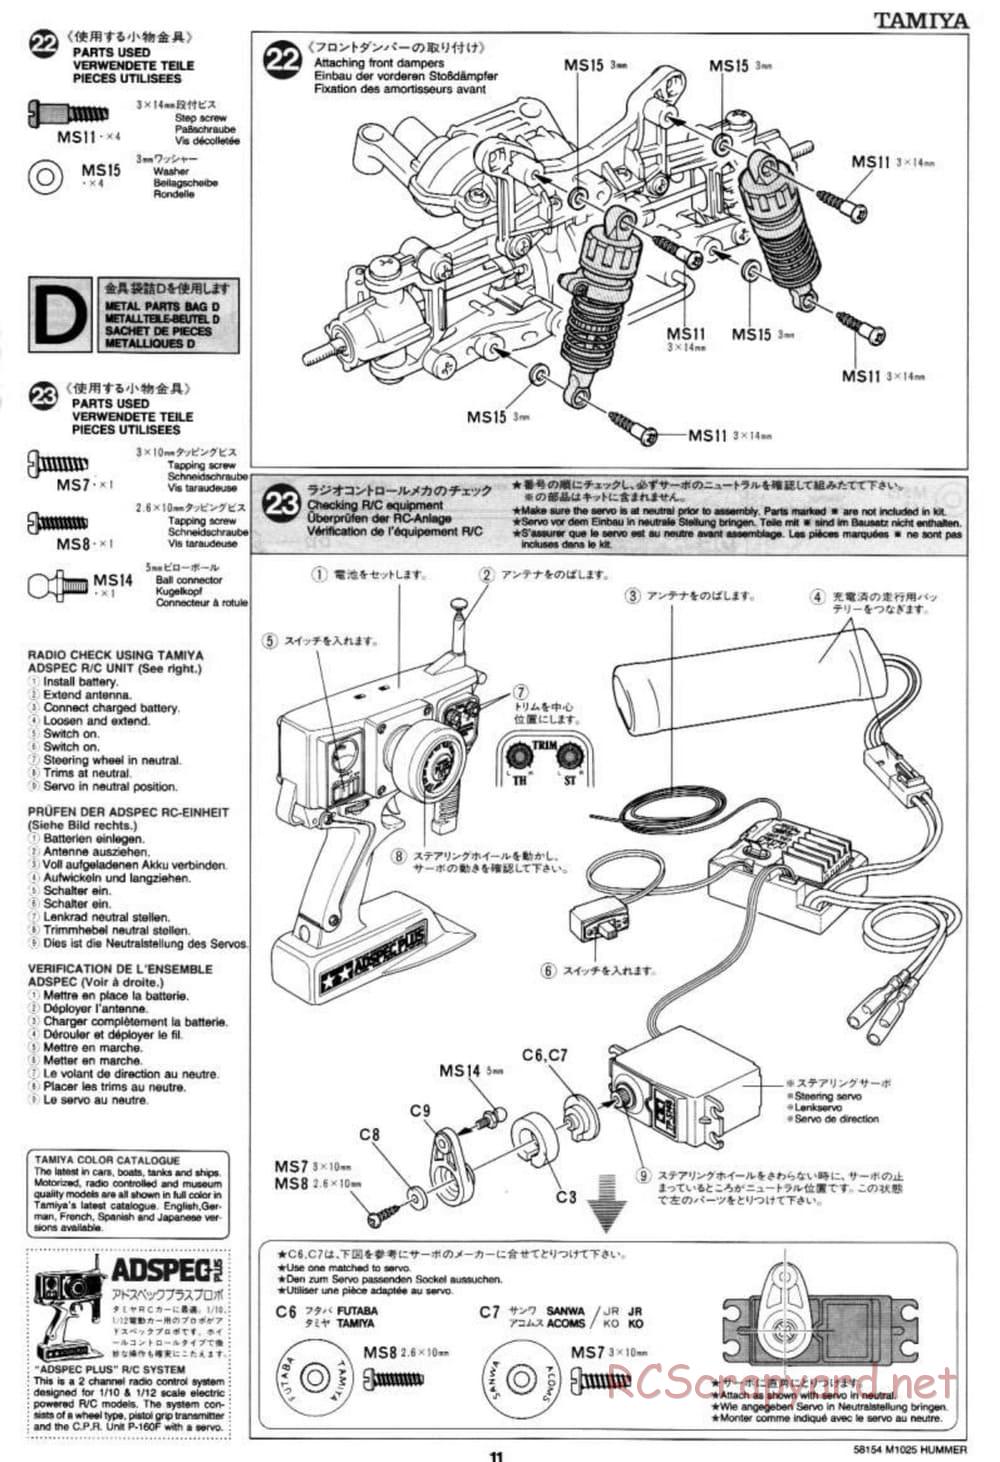 Tamiya - M1025 Hummer - TA-01 Chassis - Manual - Page 11